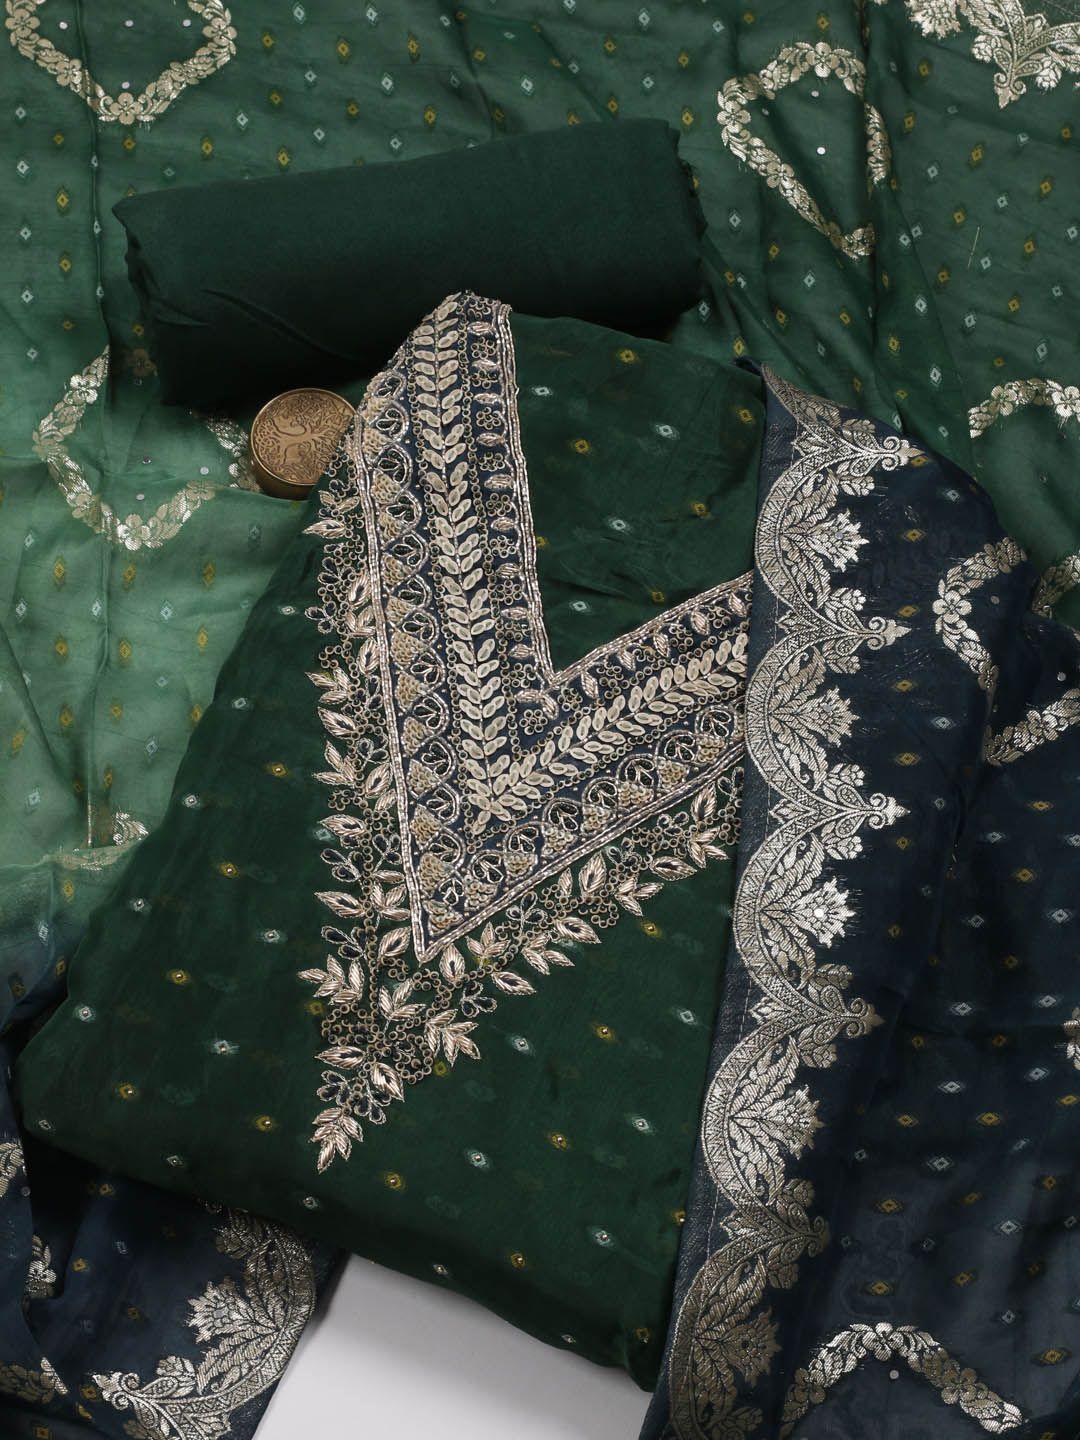 Meena Bazaar Art Silk Unstitched Dress Material